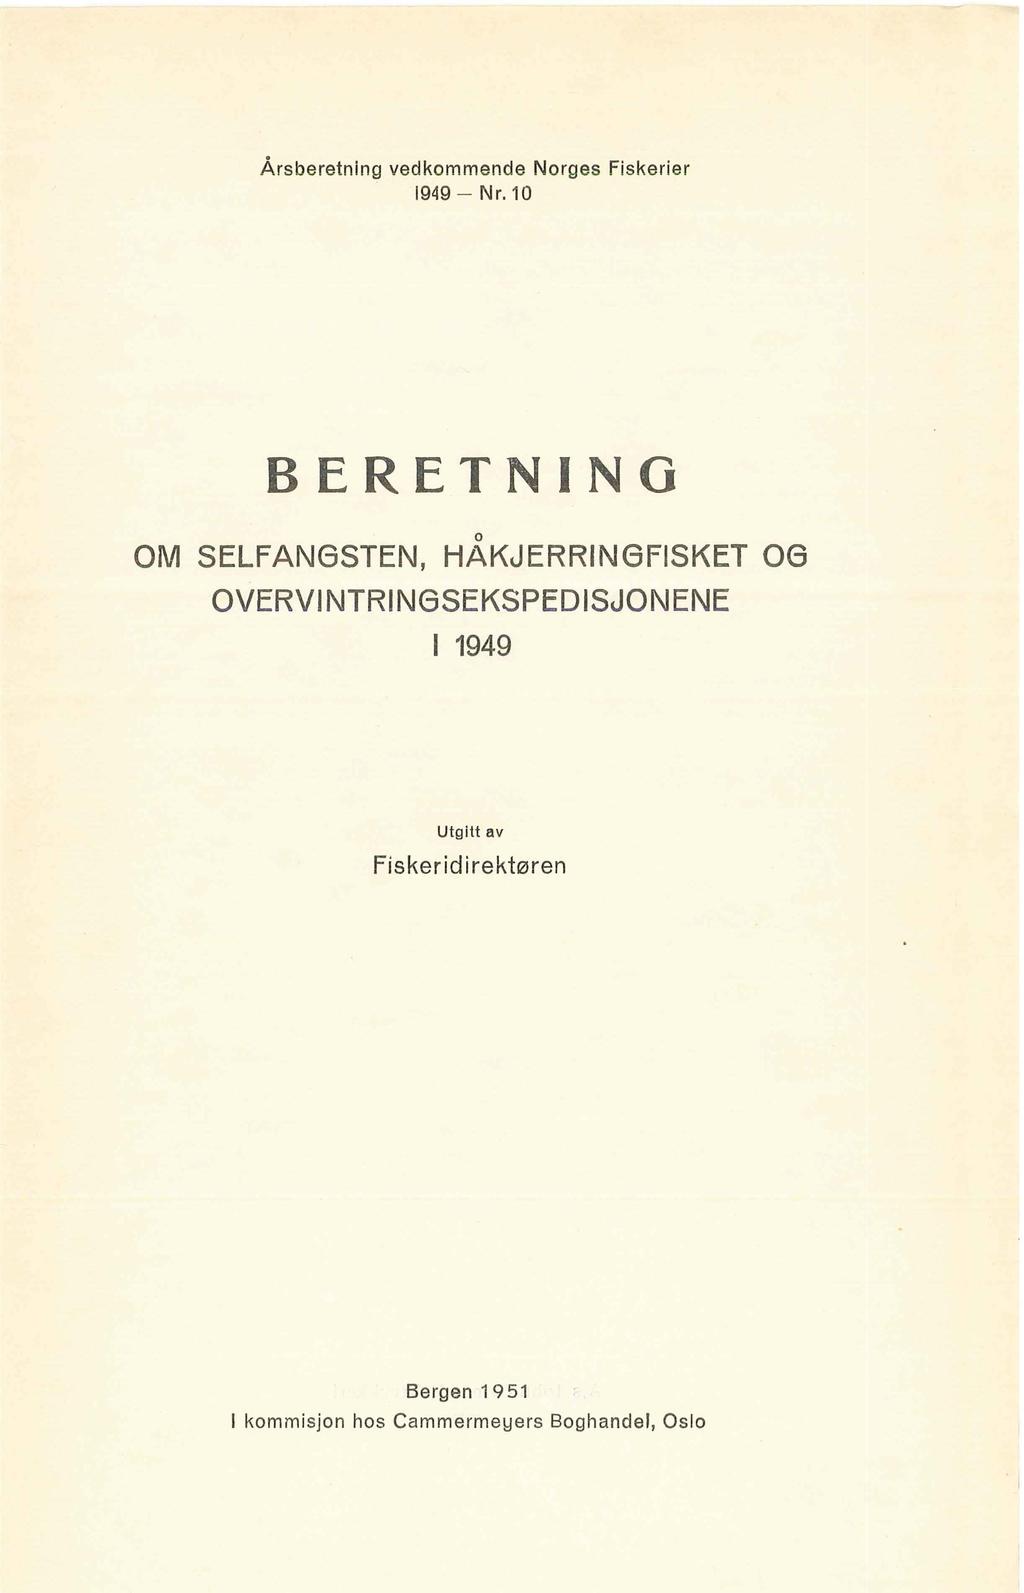 Årsberetning vedkommende Norges Fiskerier 1949 Nr.